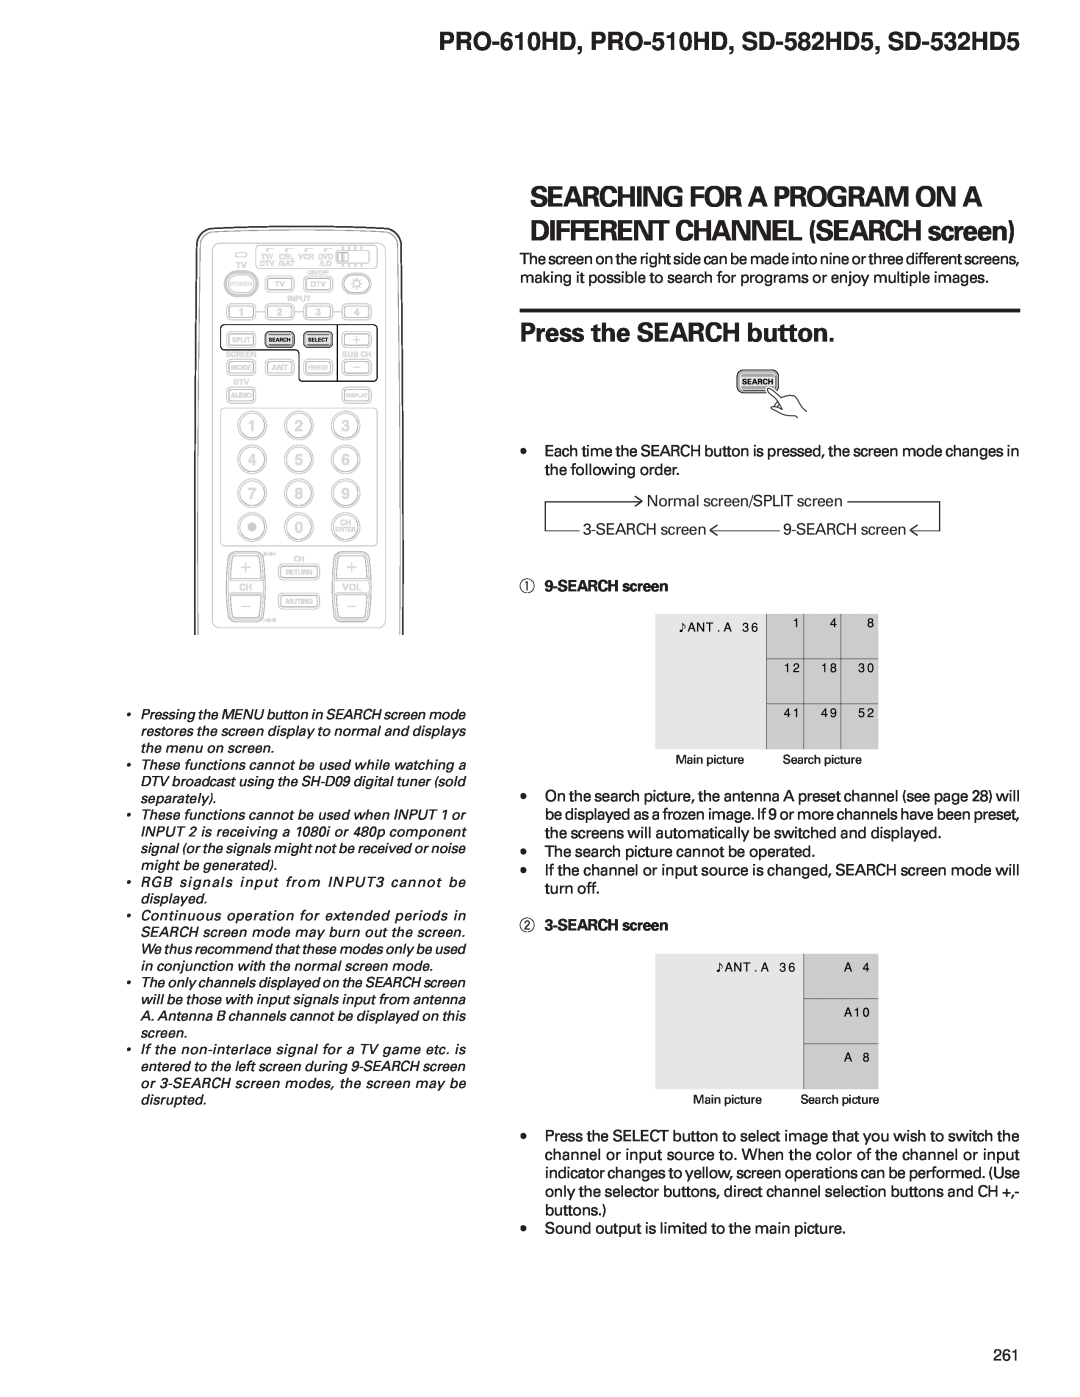 Pioneer Press the SEARCH button, PRO-610HD, PRO-510HD, SD-582HD5, SD-532HD5, 1 9-SEARCH screen, 2 3-SEARCH screen 